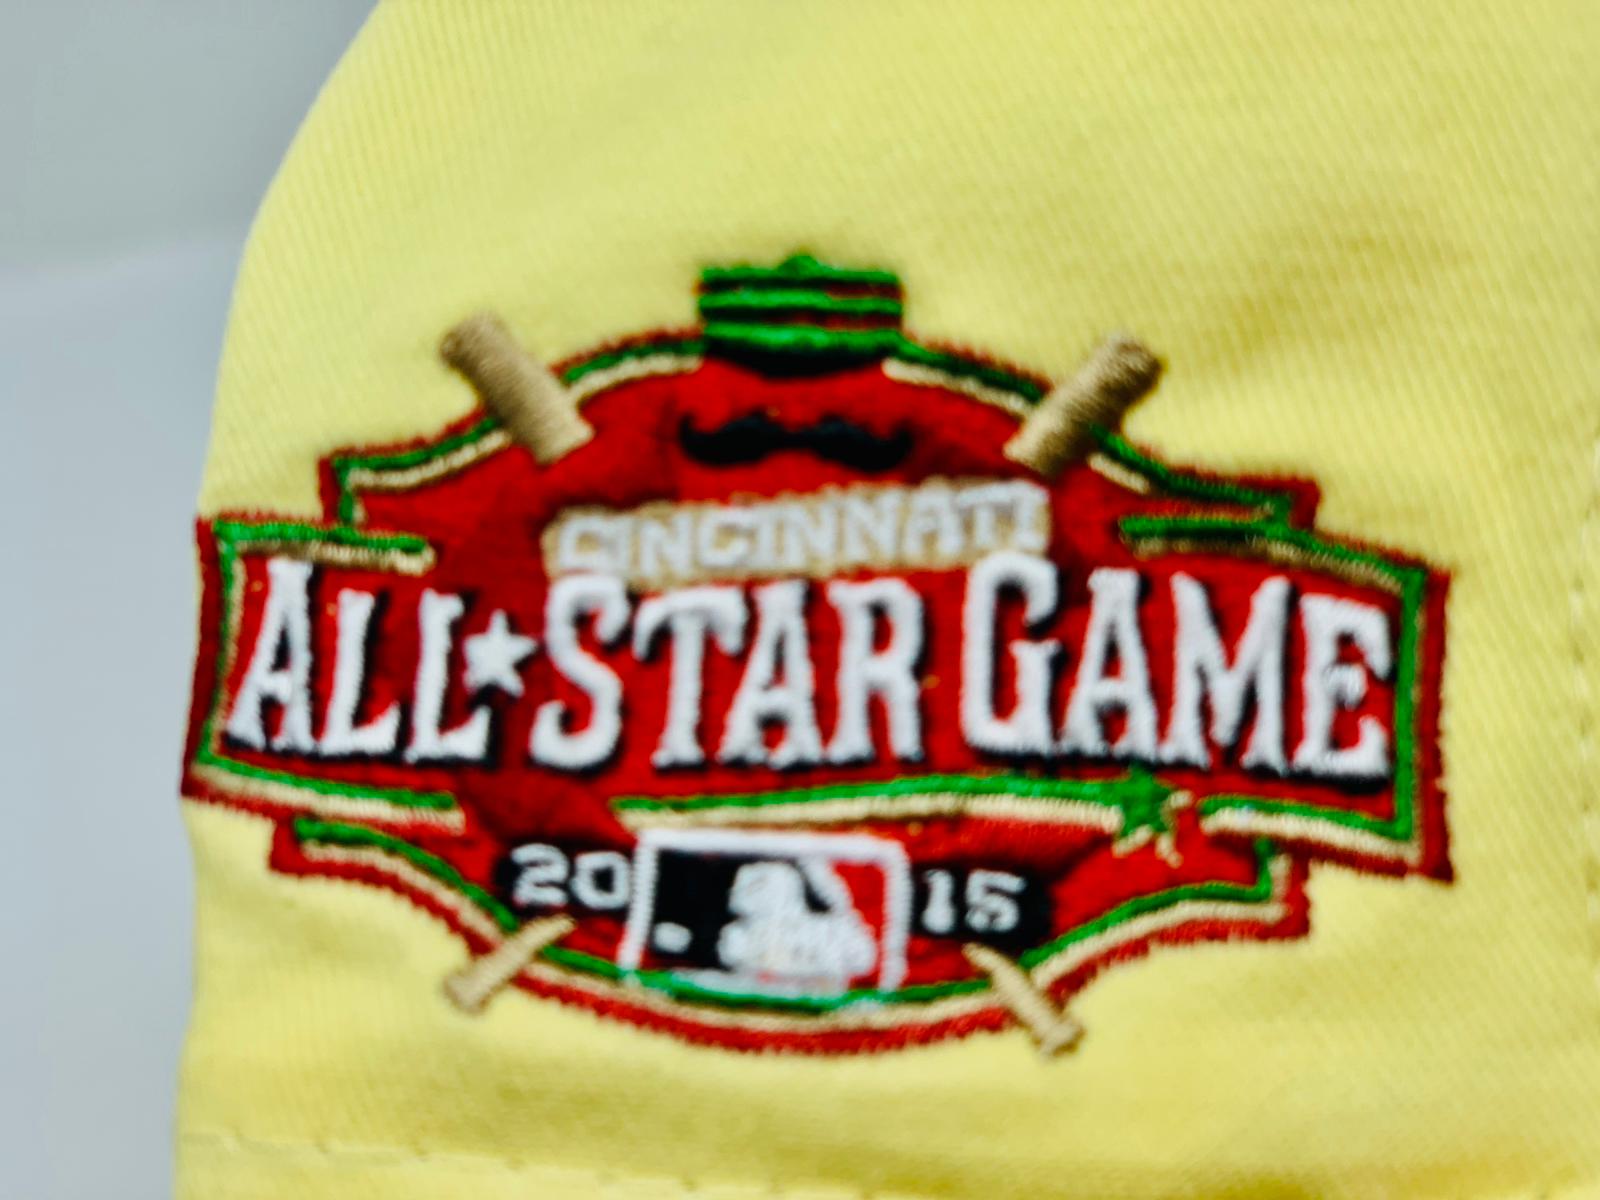 CINCINNATI REDS 2015 ALL-STAR GAME BONEZ DAY NEW ERA FITTED CAP